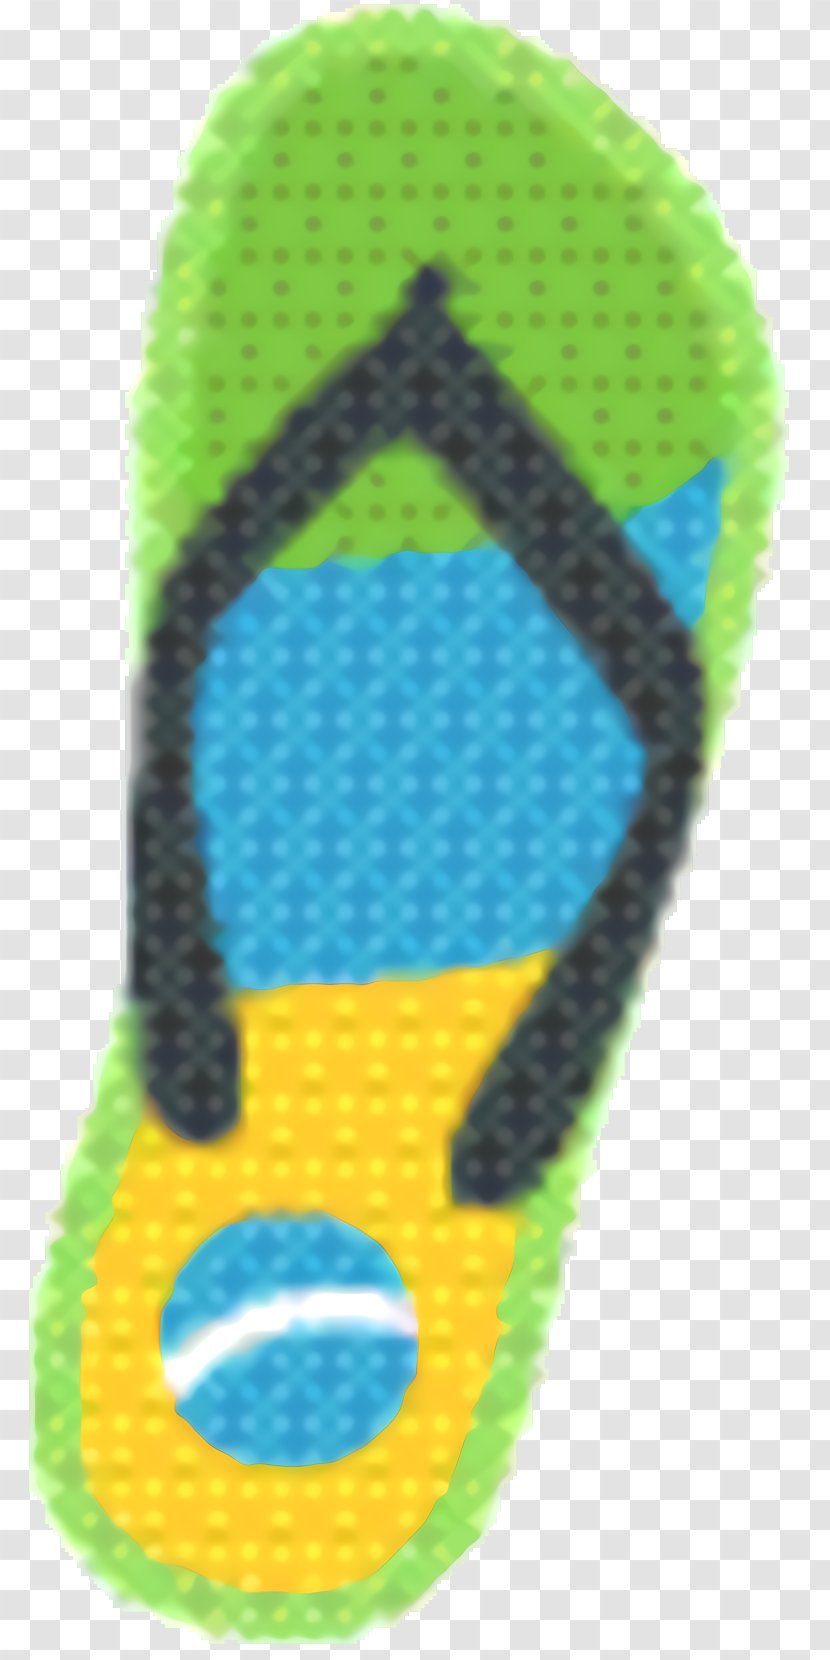 Background Green - Flipflops - Footwear Transparent PNG